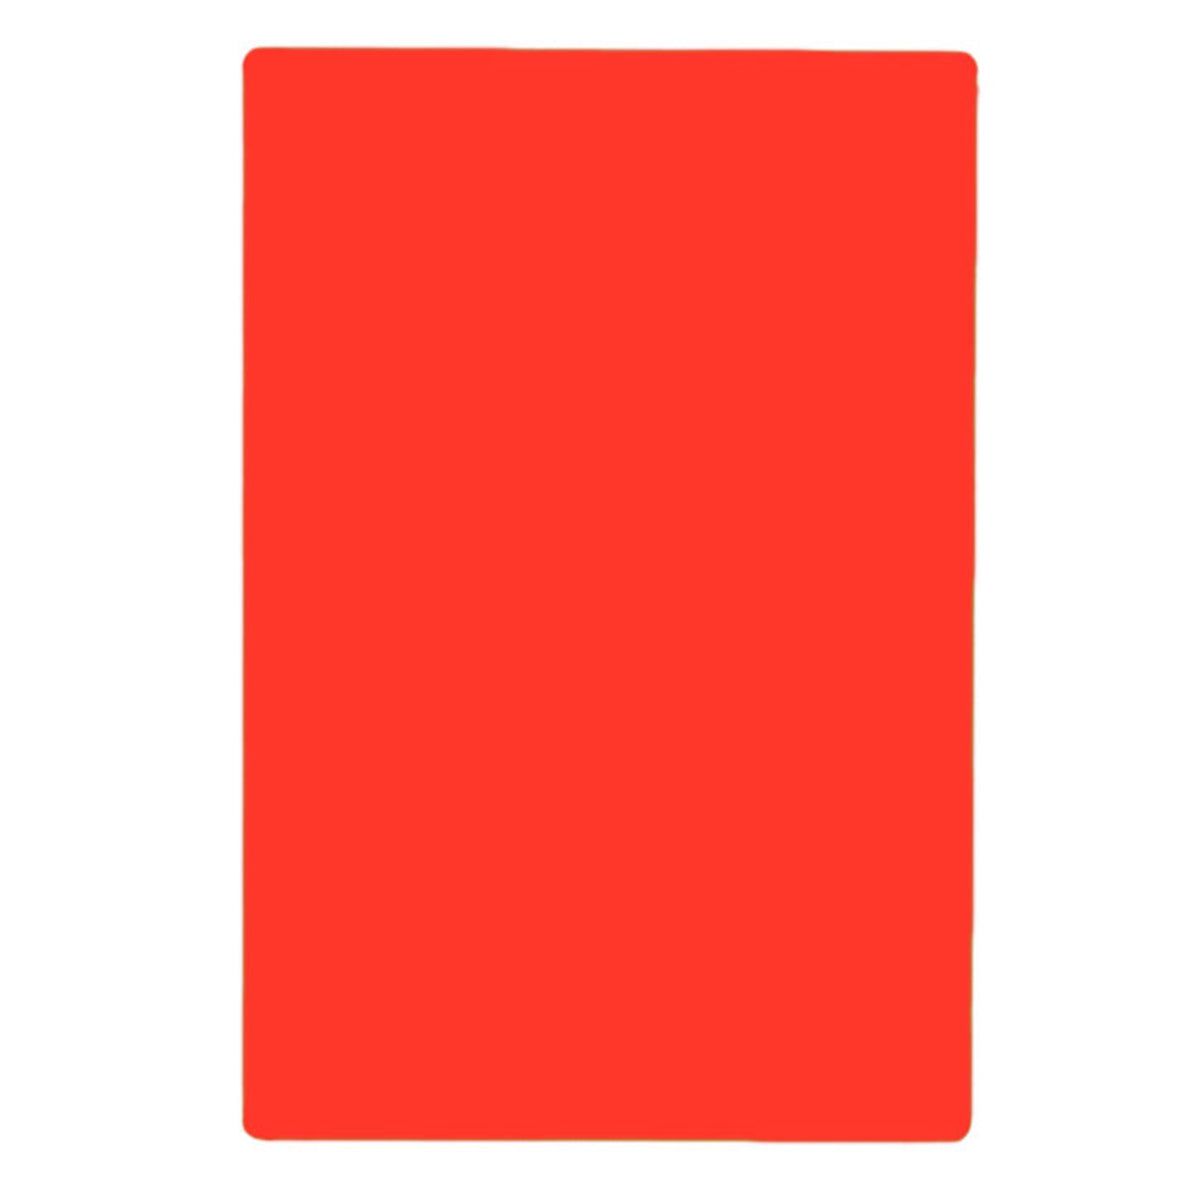 Tabla para Picar de Plástico Rojo de 30 x 46 cm NSF